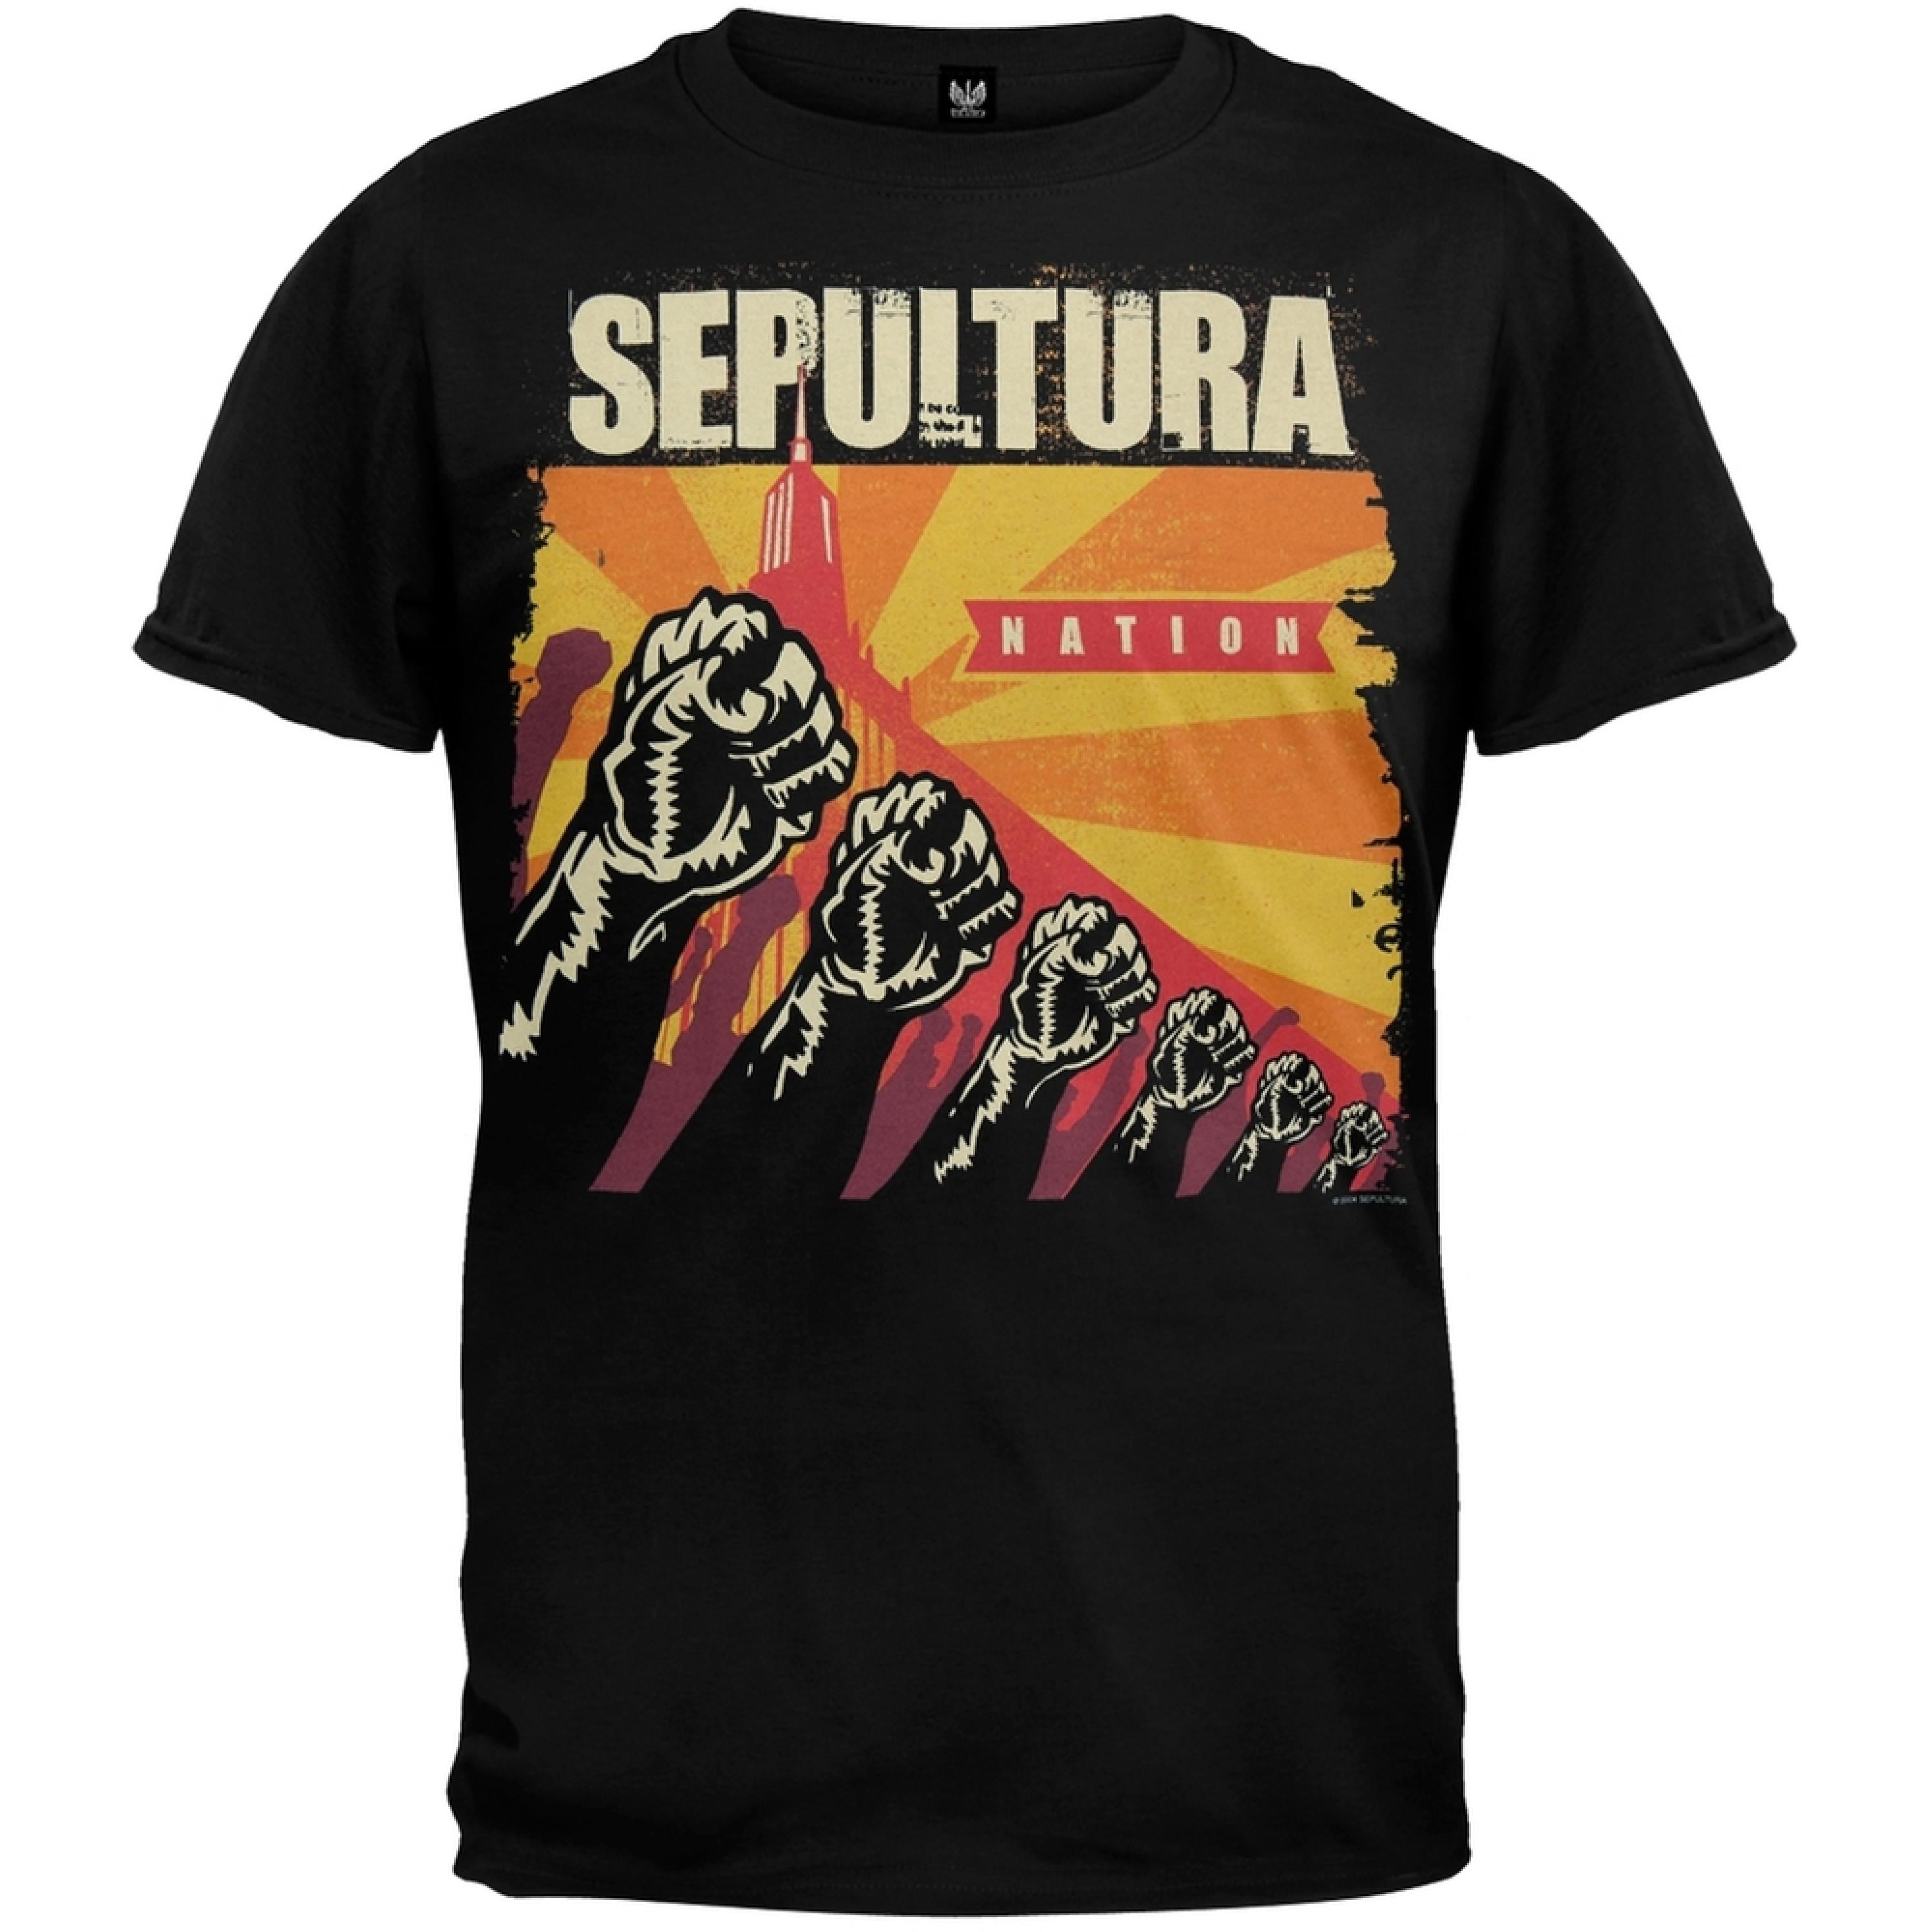 Sepultura - Nation T-Shirt - Walmart.com